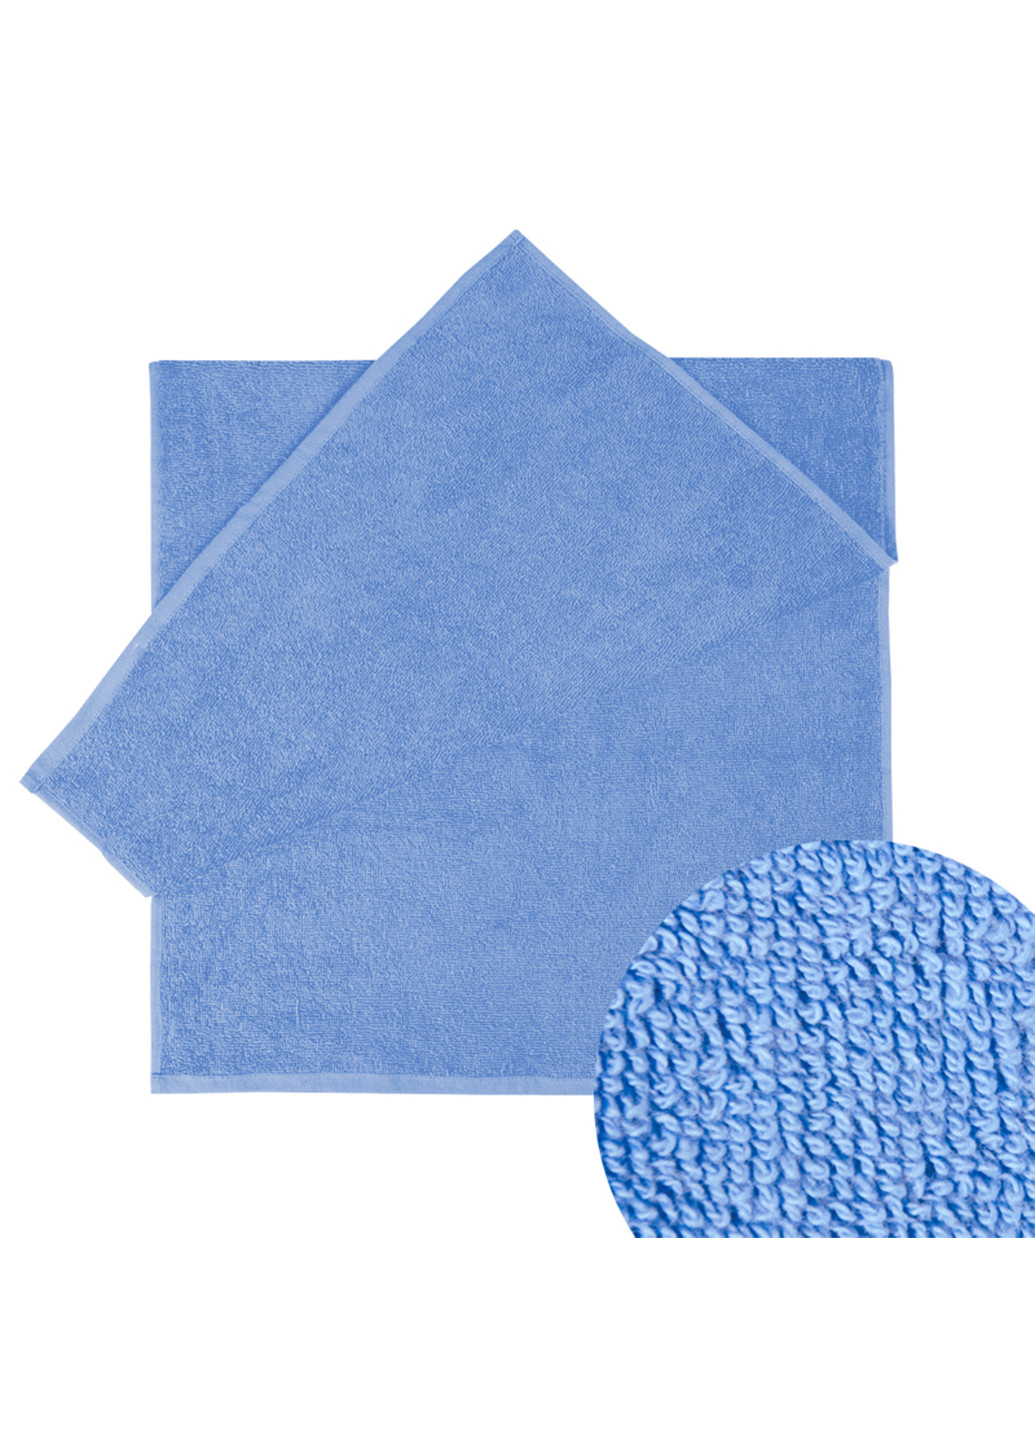 Ярослав полотенце яр-400 махровое 70х140 однотонный темно-голубой производство - Украина